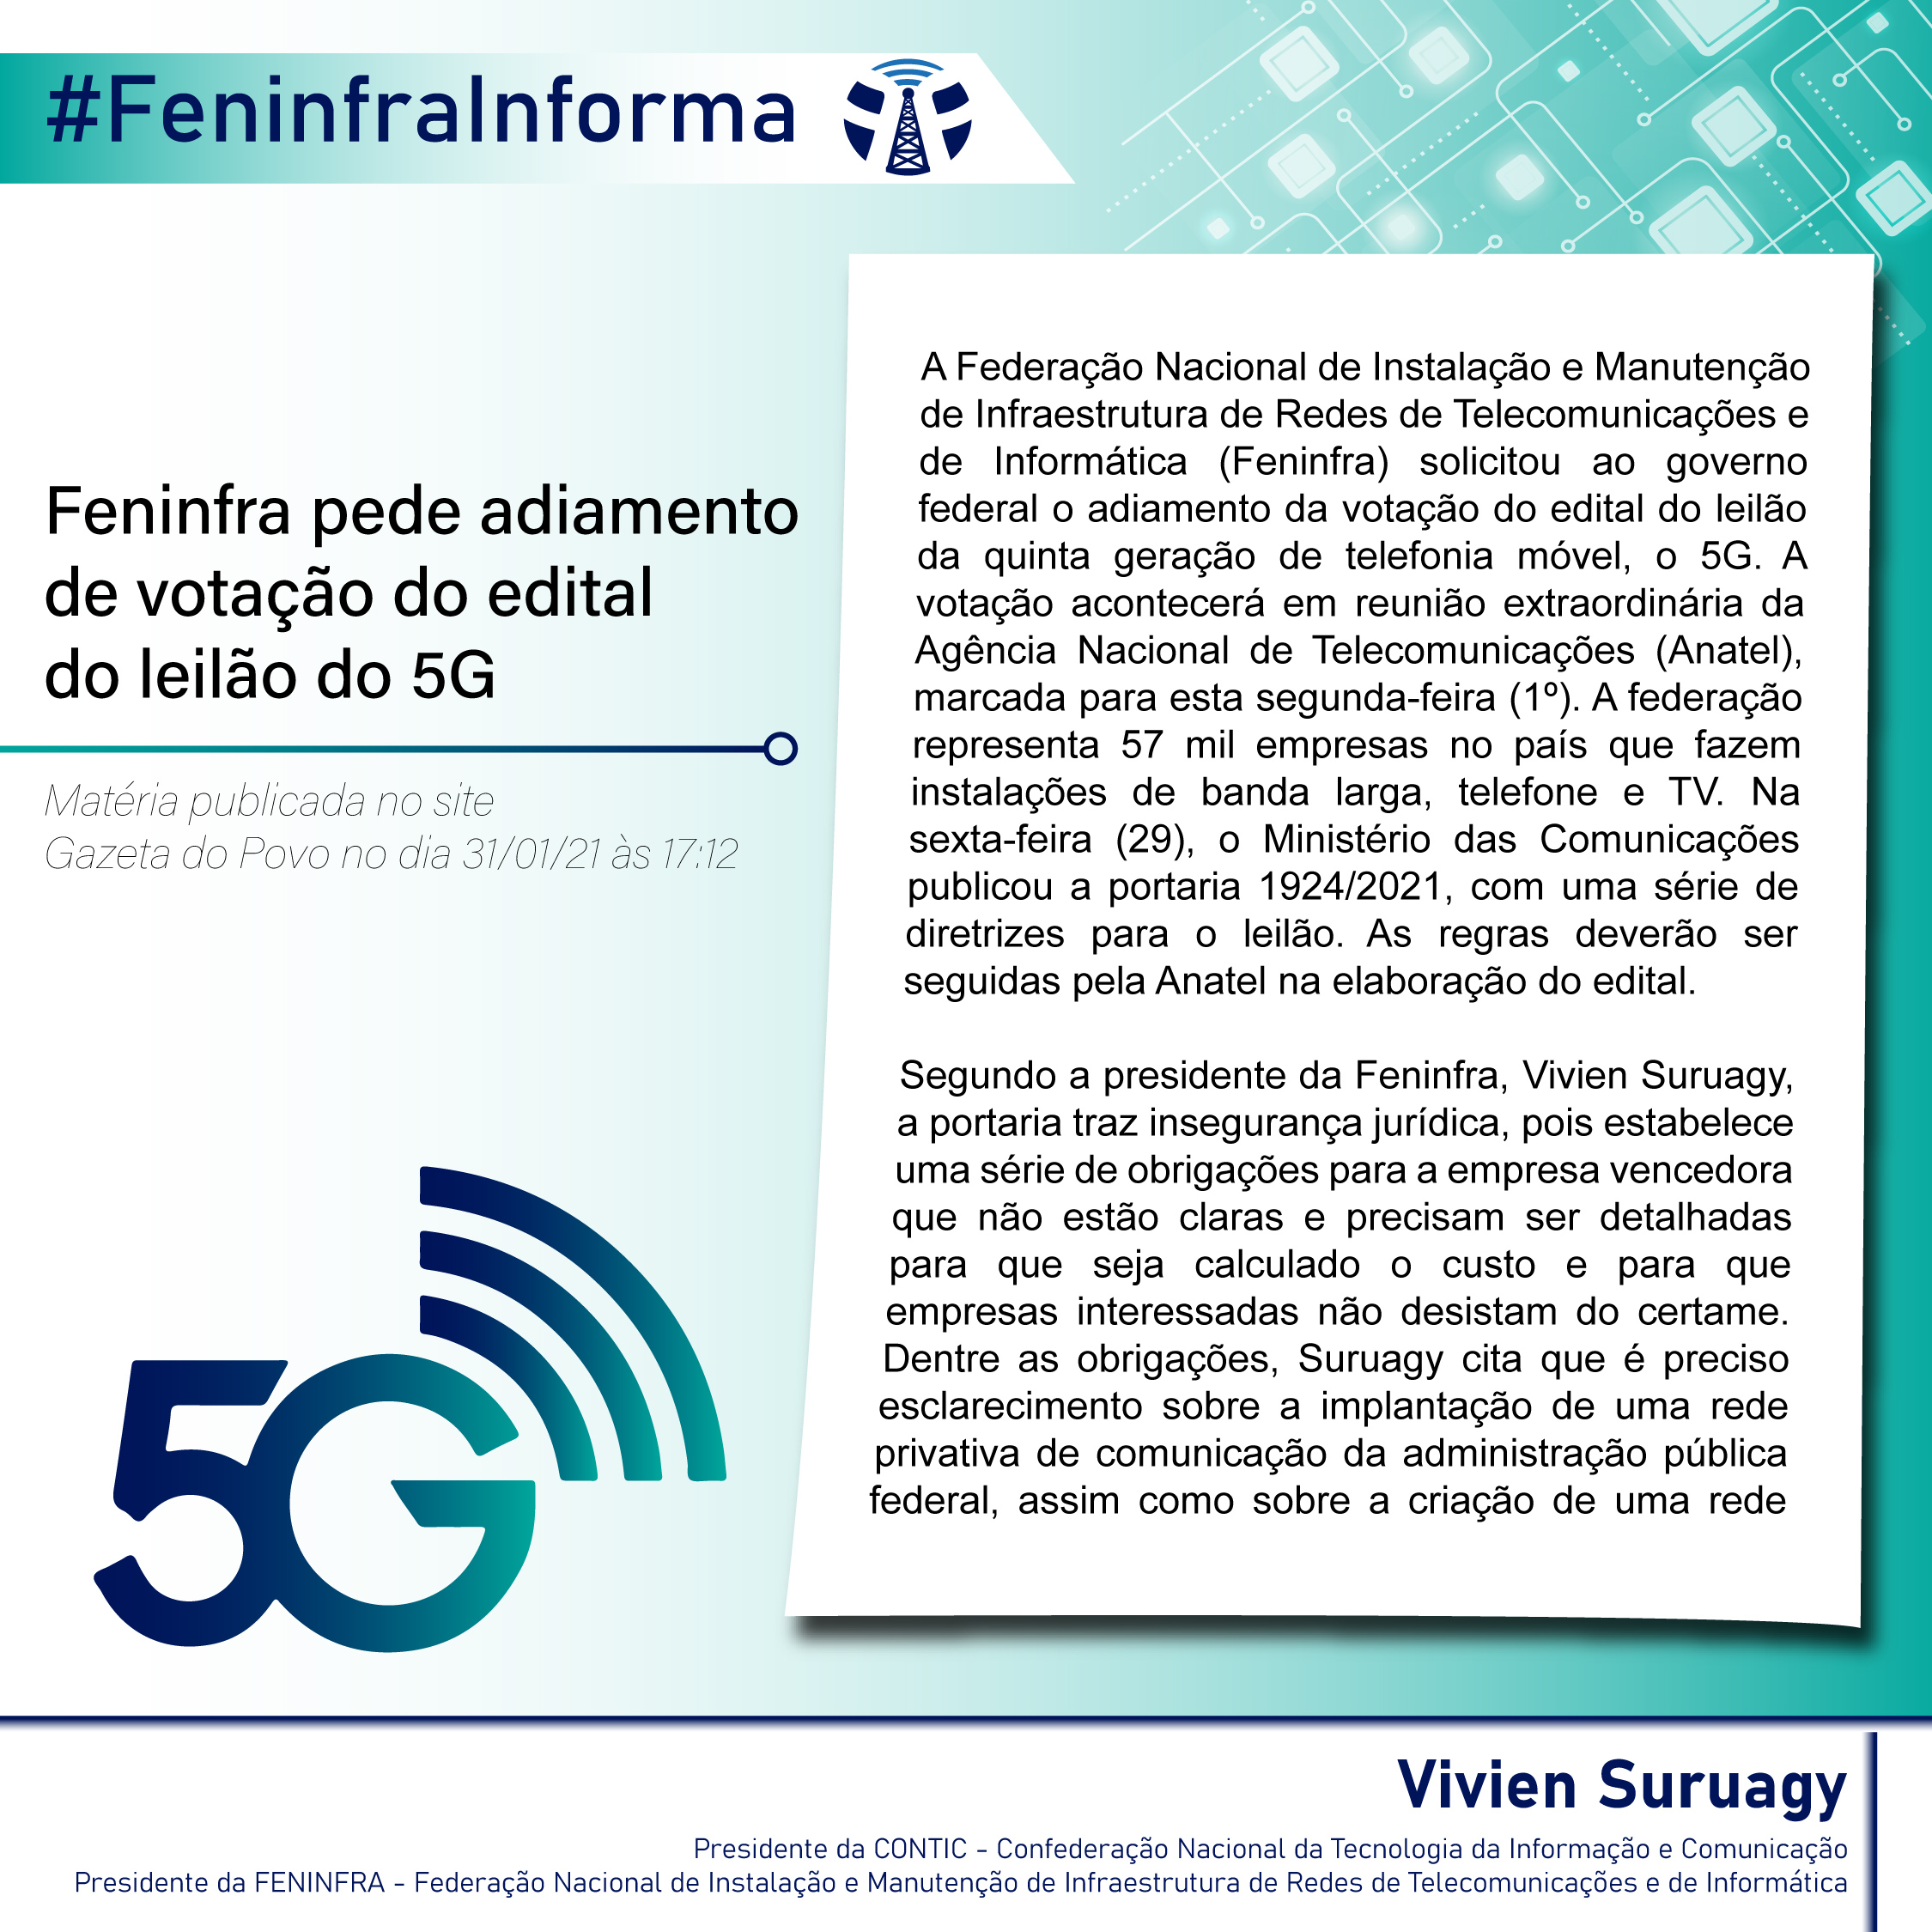 Feninfra pede adiamento de votação do edital do leilão do 5G